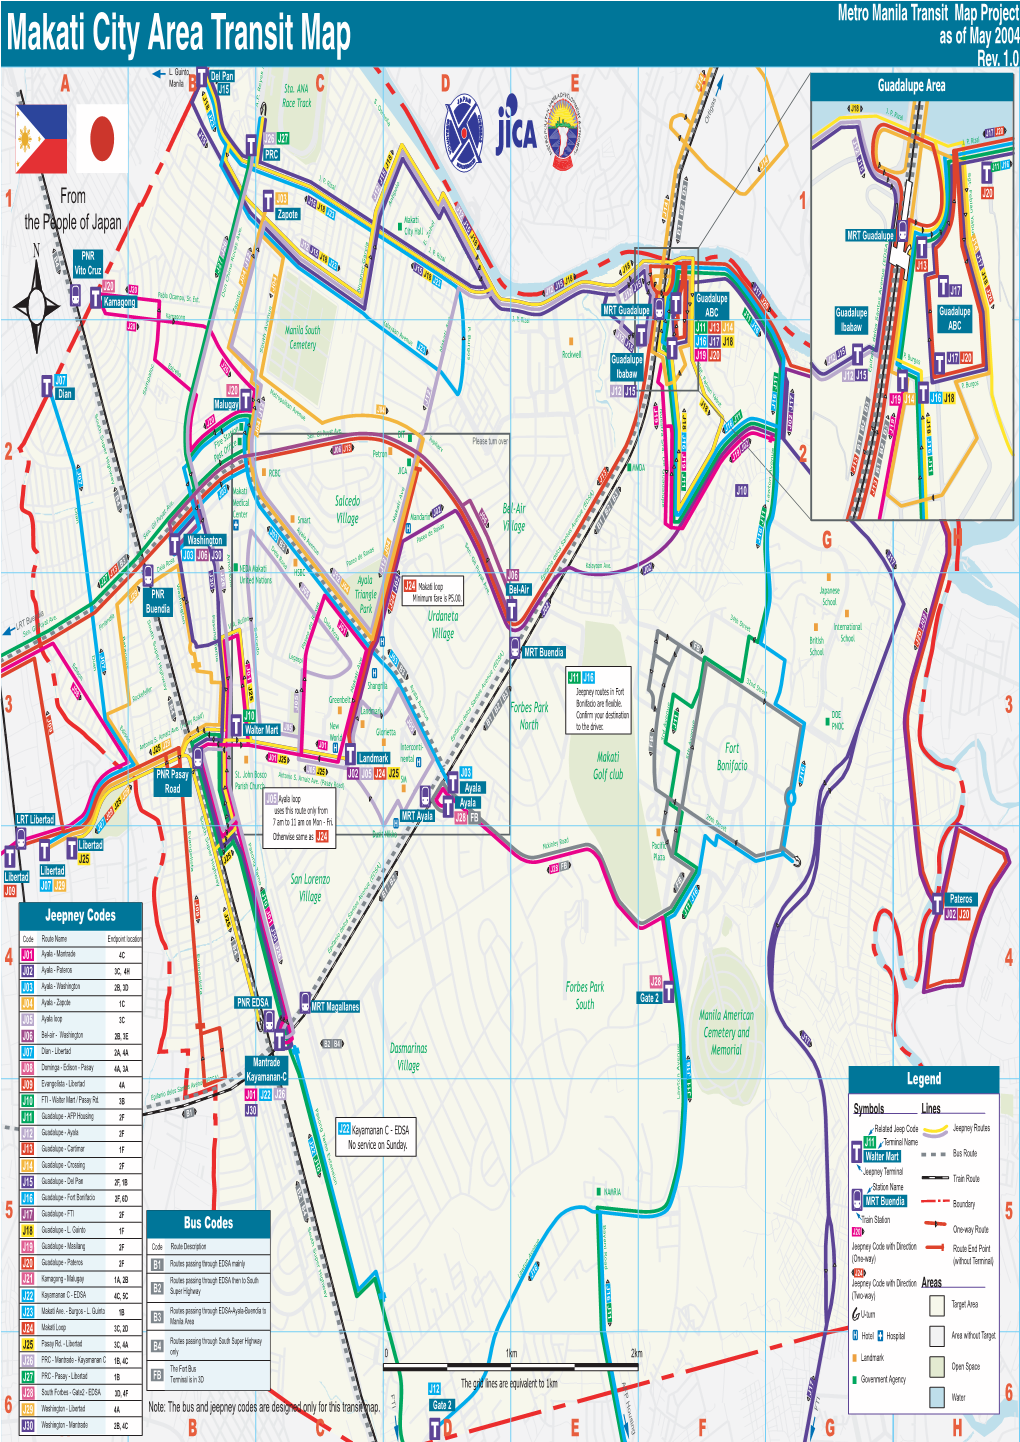 Makati City Area Transit Map Makati City Area Transit T J09 5 1 4 Libertad 3 2 6